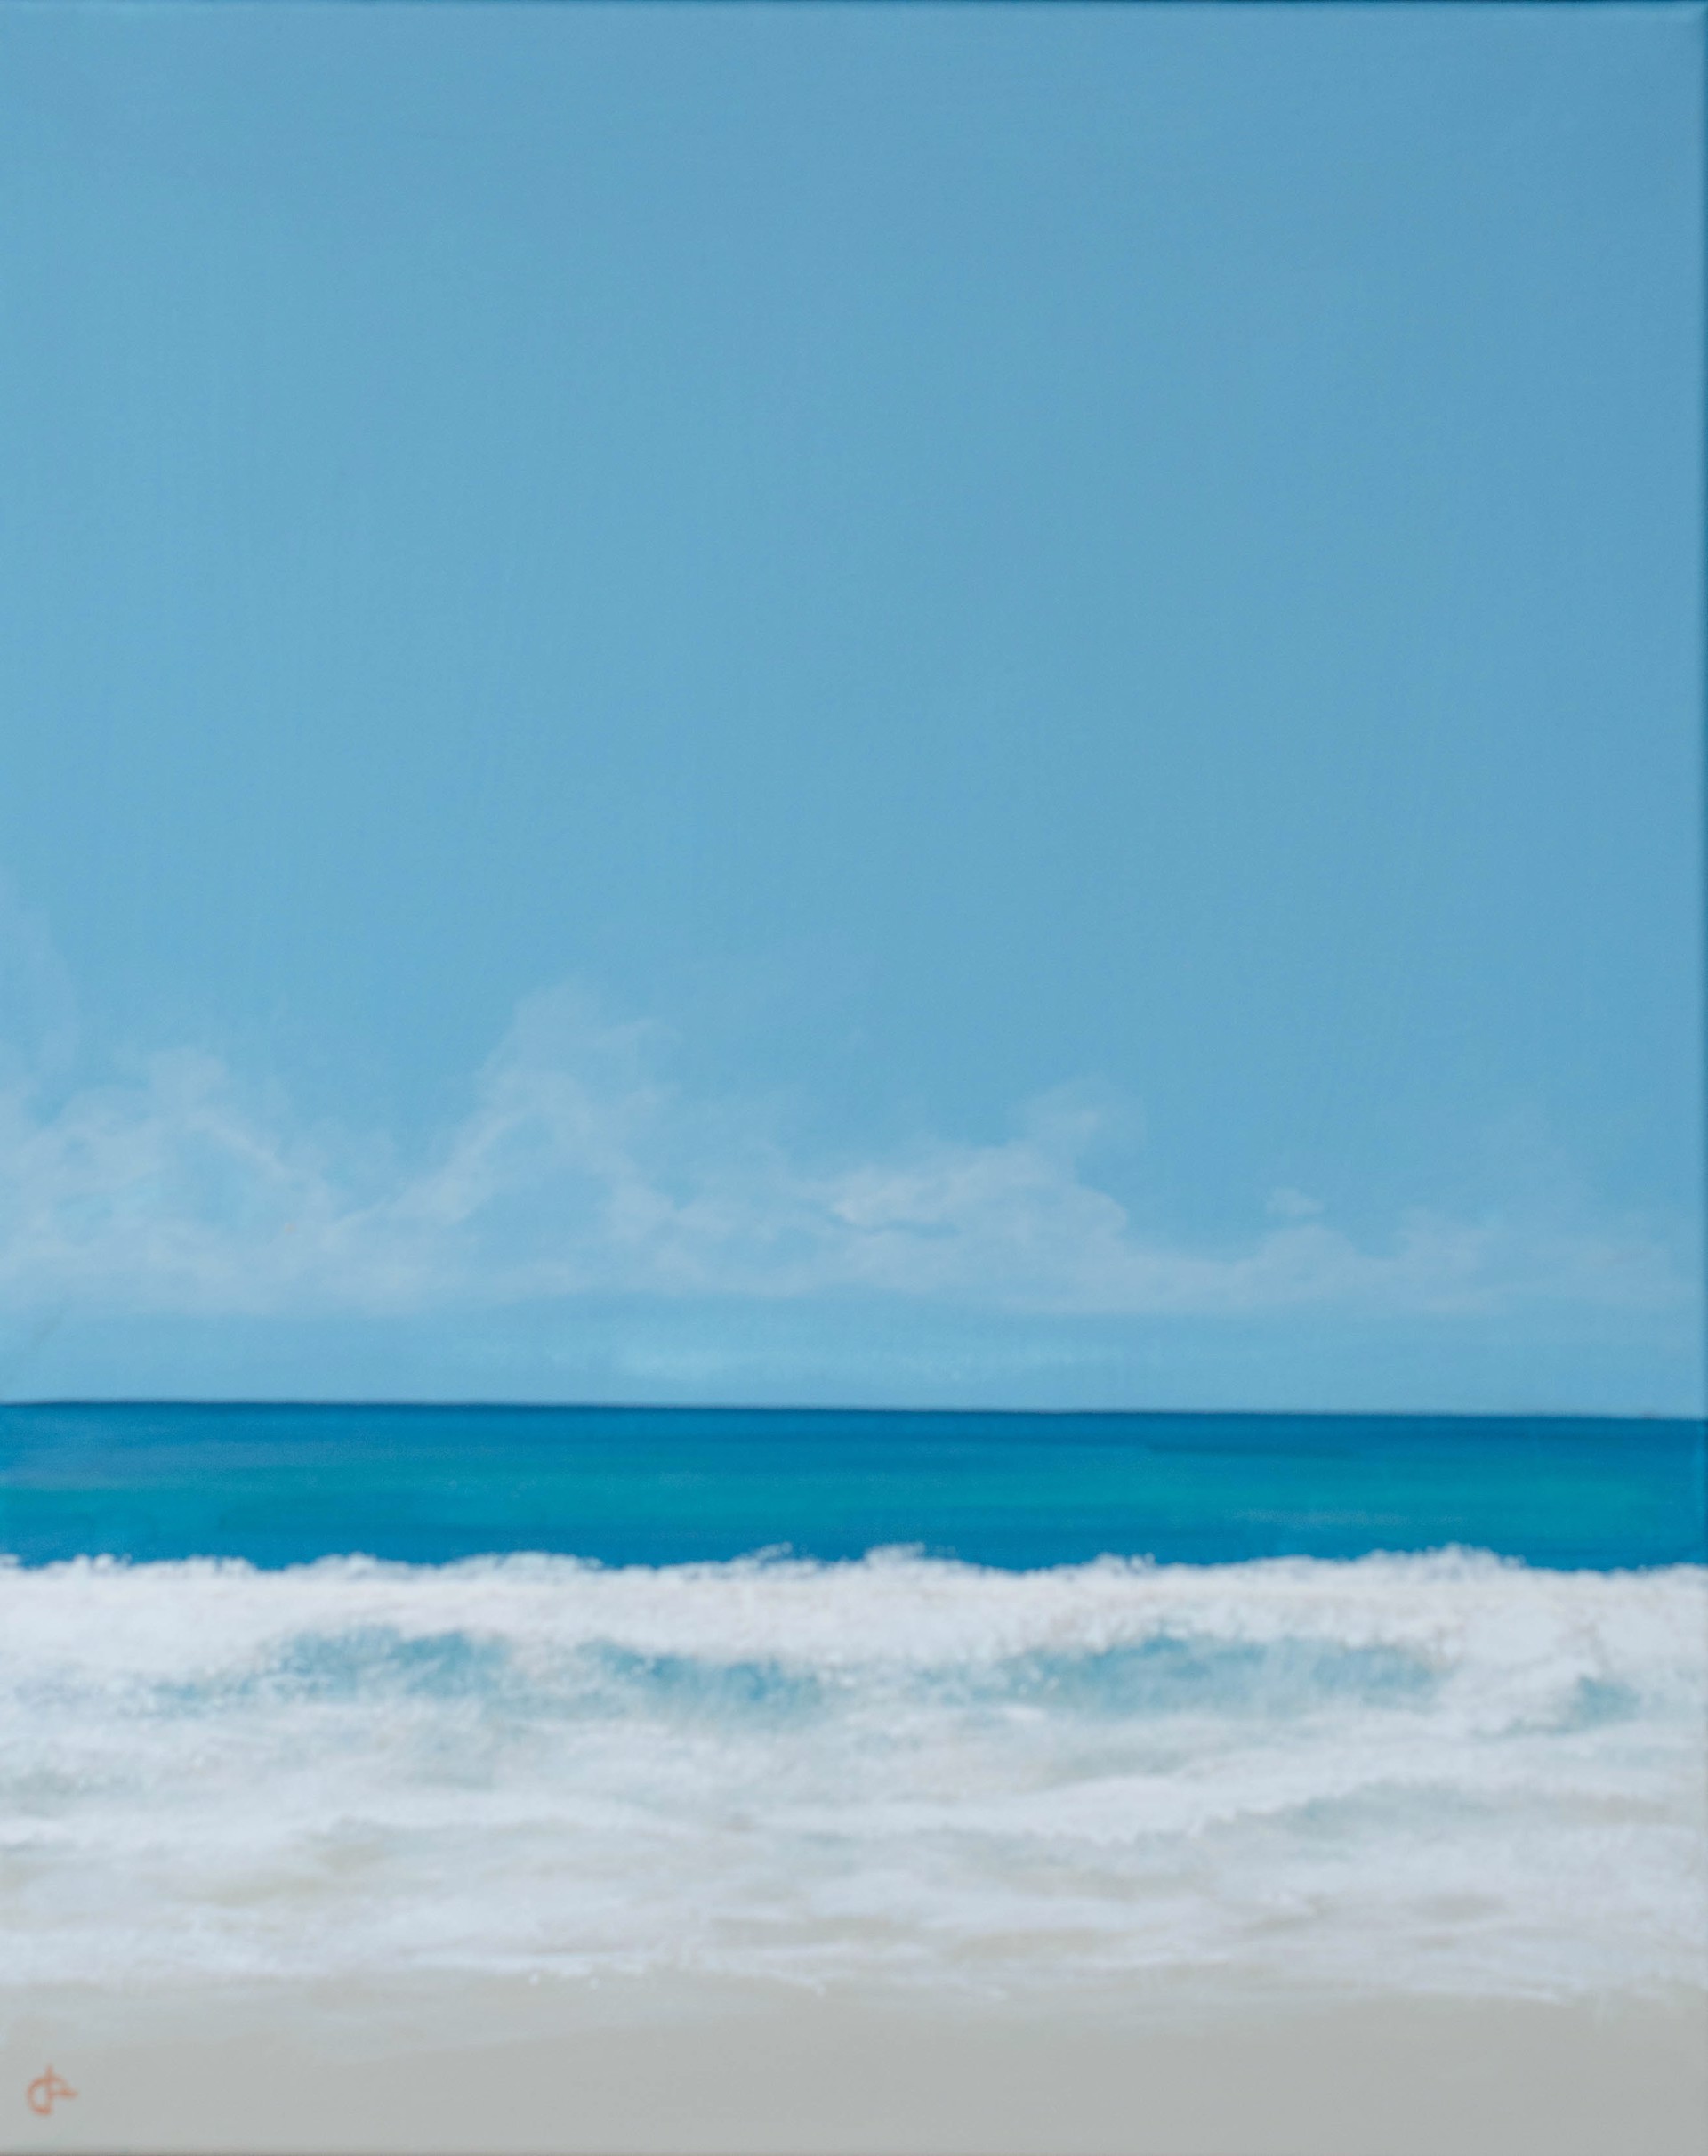 Surf Break III by Peter Laughton